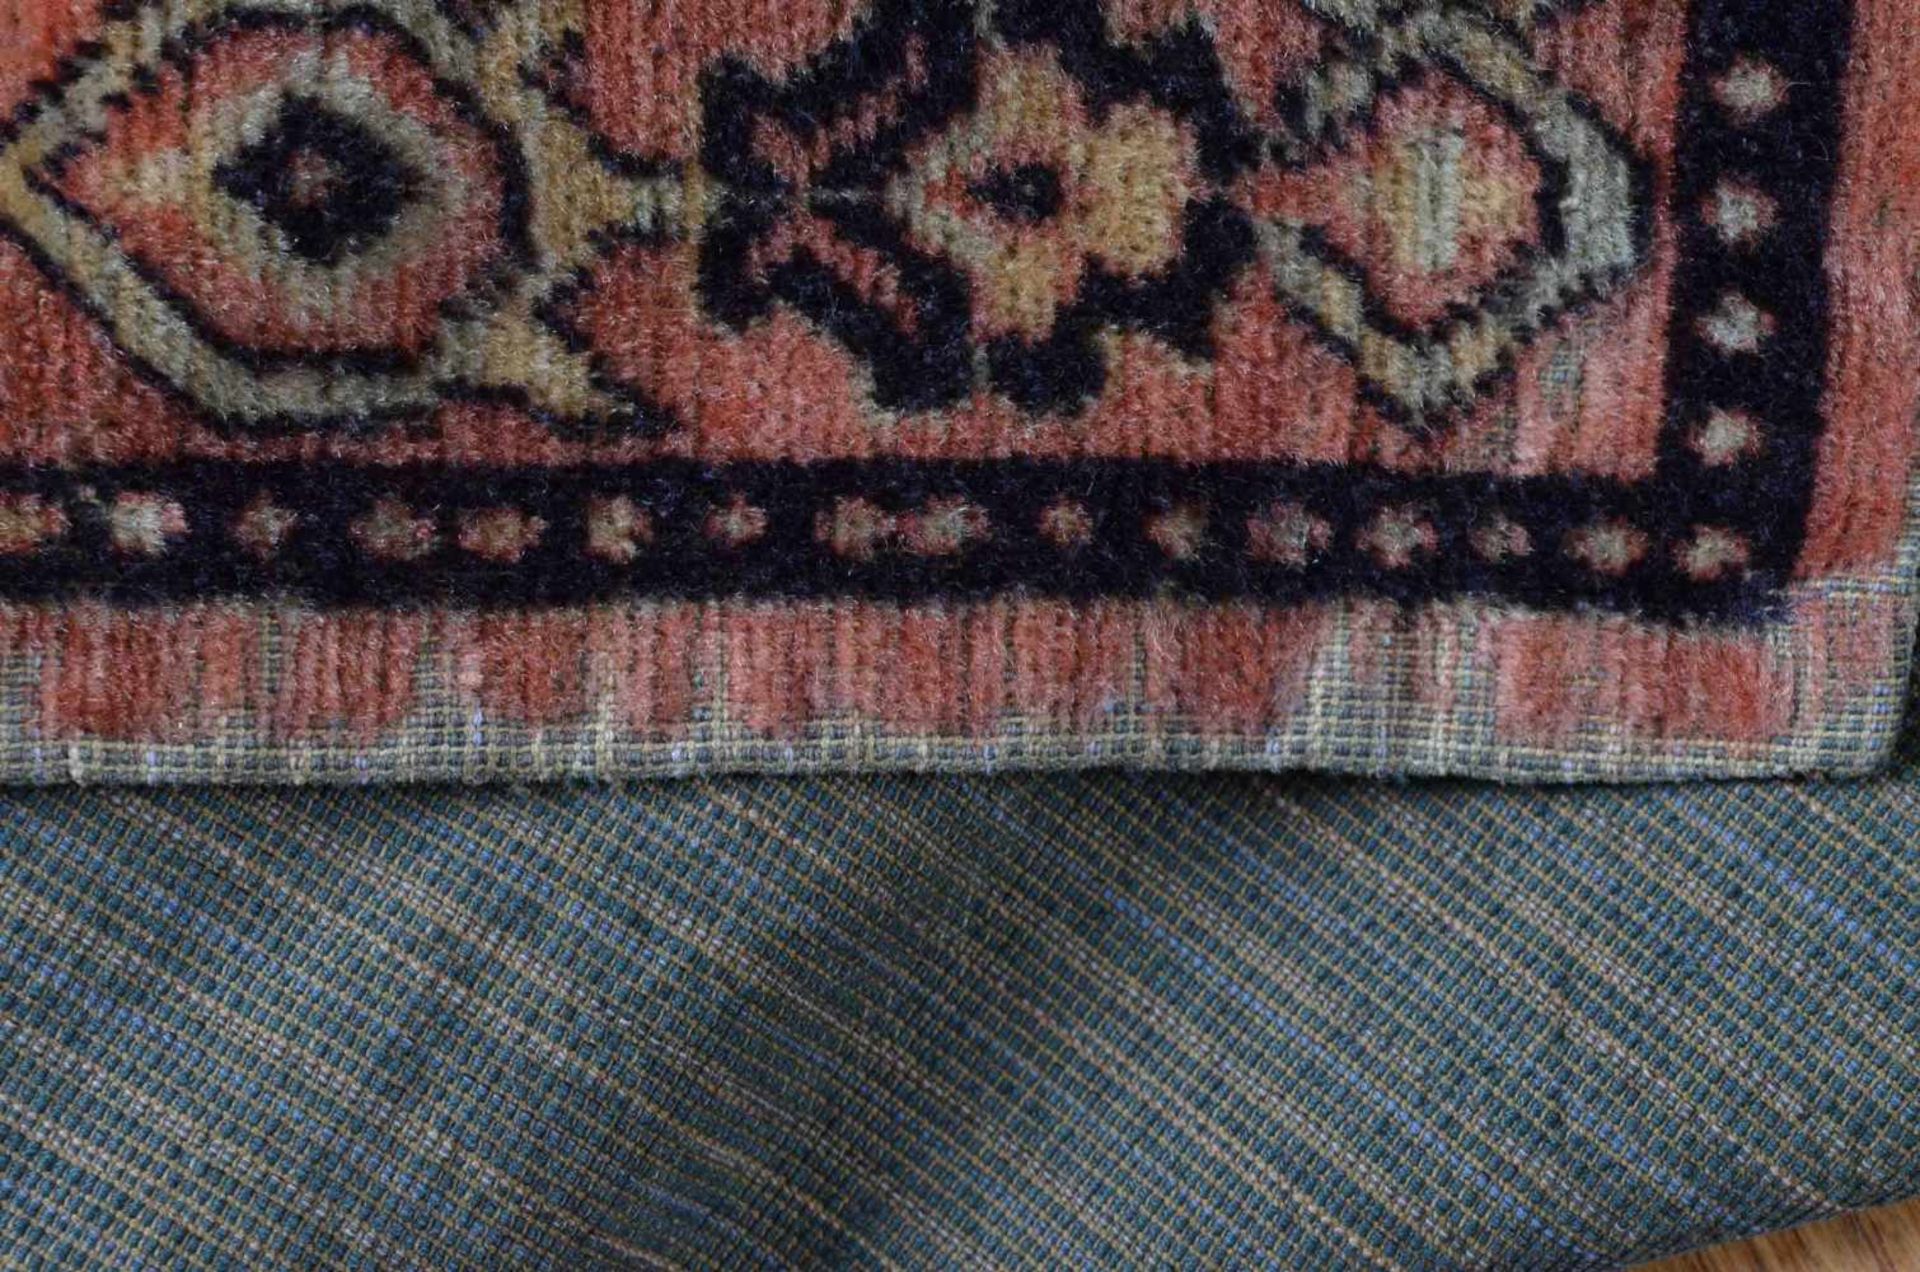 alter orientalischer Teppich / Wandteppichhandgewebt, 2,80 m x 1,40 mold oriental carpet / - Bild 3 aus 3